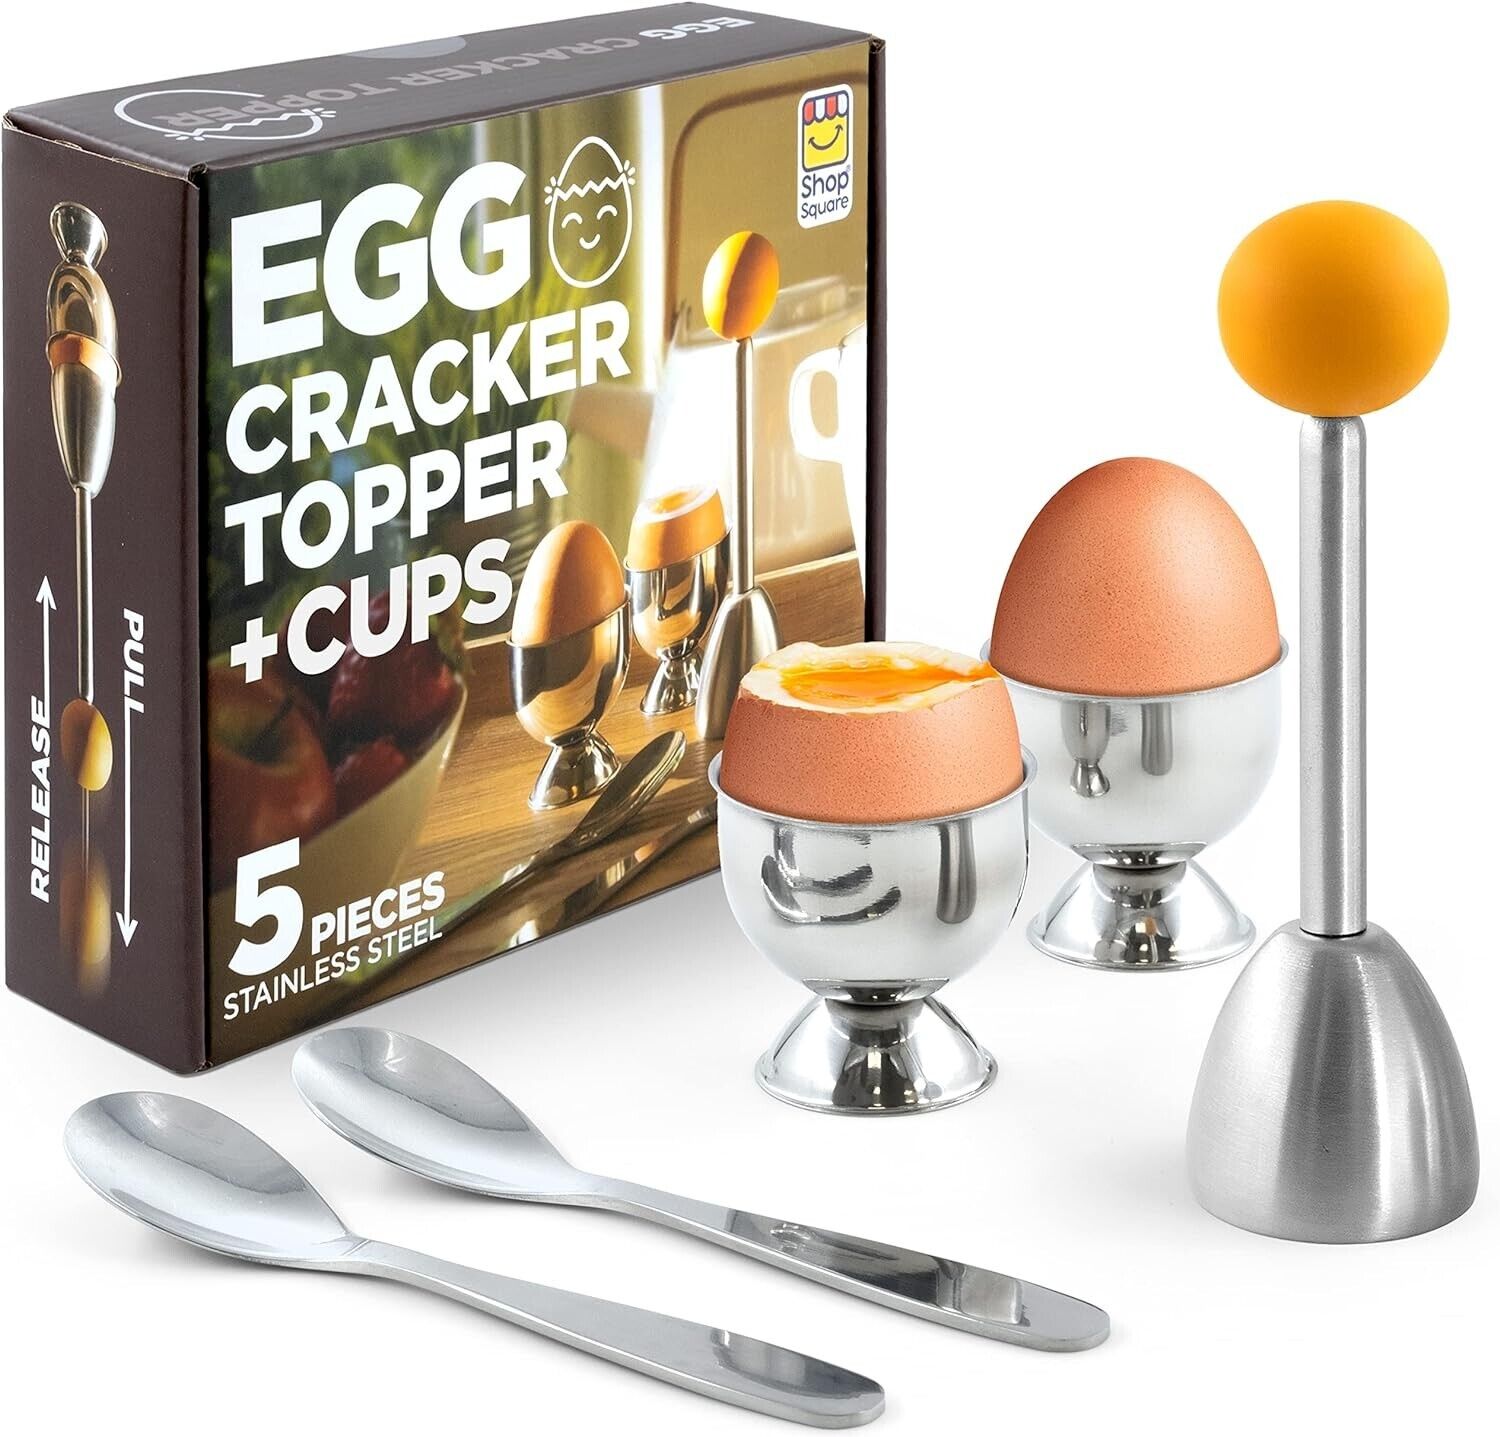 Egg Cups for Soft Boiled Eggs Soft Boiled Egg Holder Egg Topper - Includes 2 E